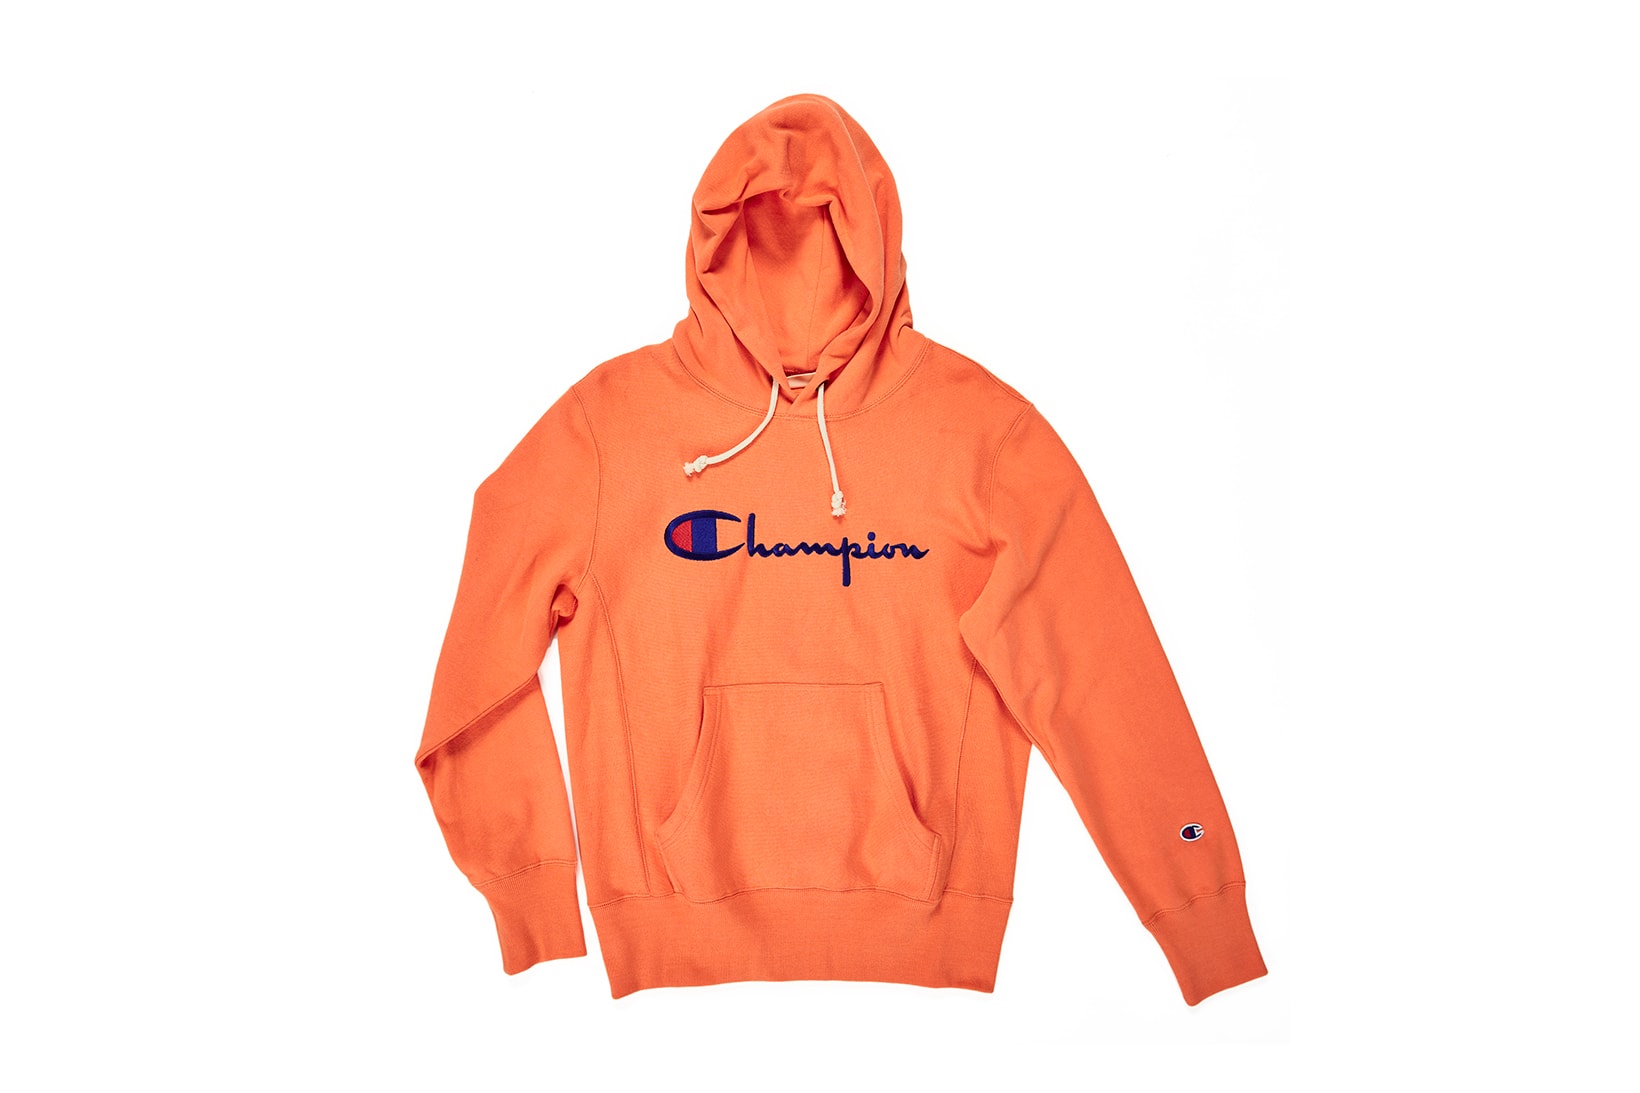 Champion Tie-Dye Orange Hoodies reverse weave multicolored script logo hoodie sweatshirt where to buy womens mens unisex